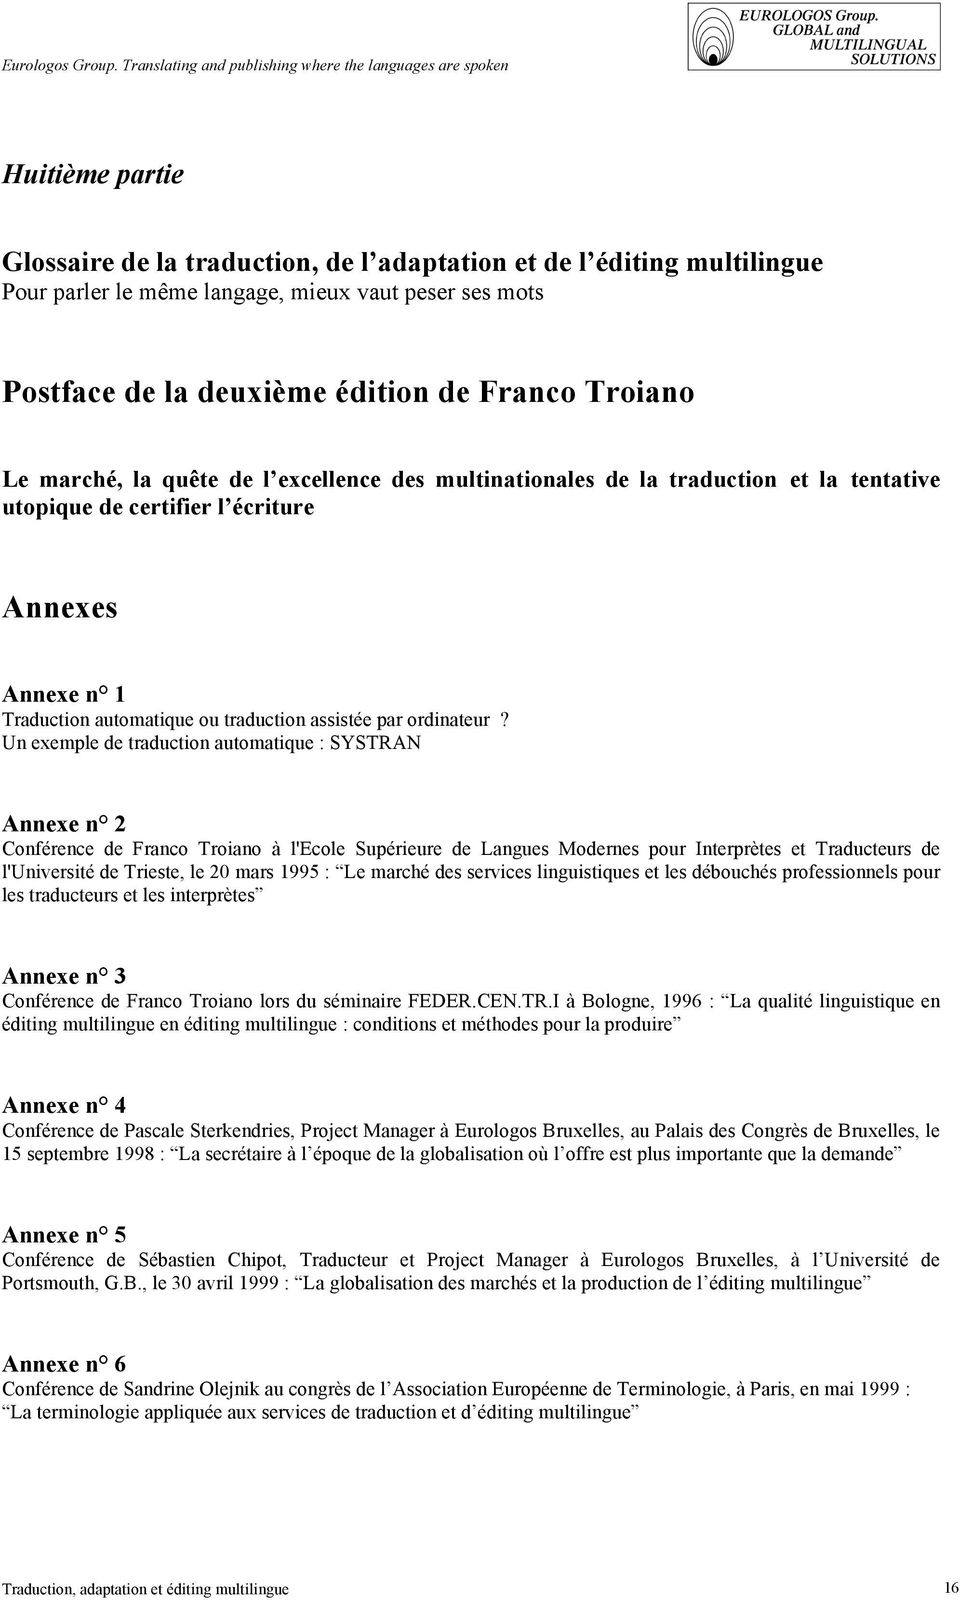 Un exemple de traduction automatique : SYSTRAN Annexe n 2 Conférence de Franco Troiano à l'ecole Supérieure de Langues Modernes pour Interprètes et Traducteurs de l'université de Trieste, le 20 mars